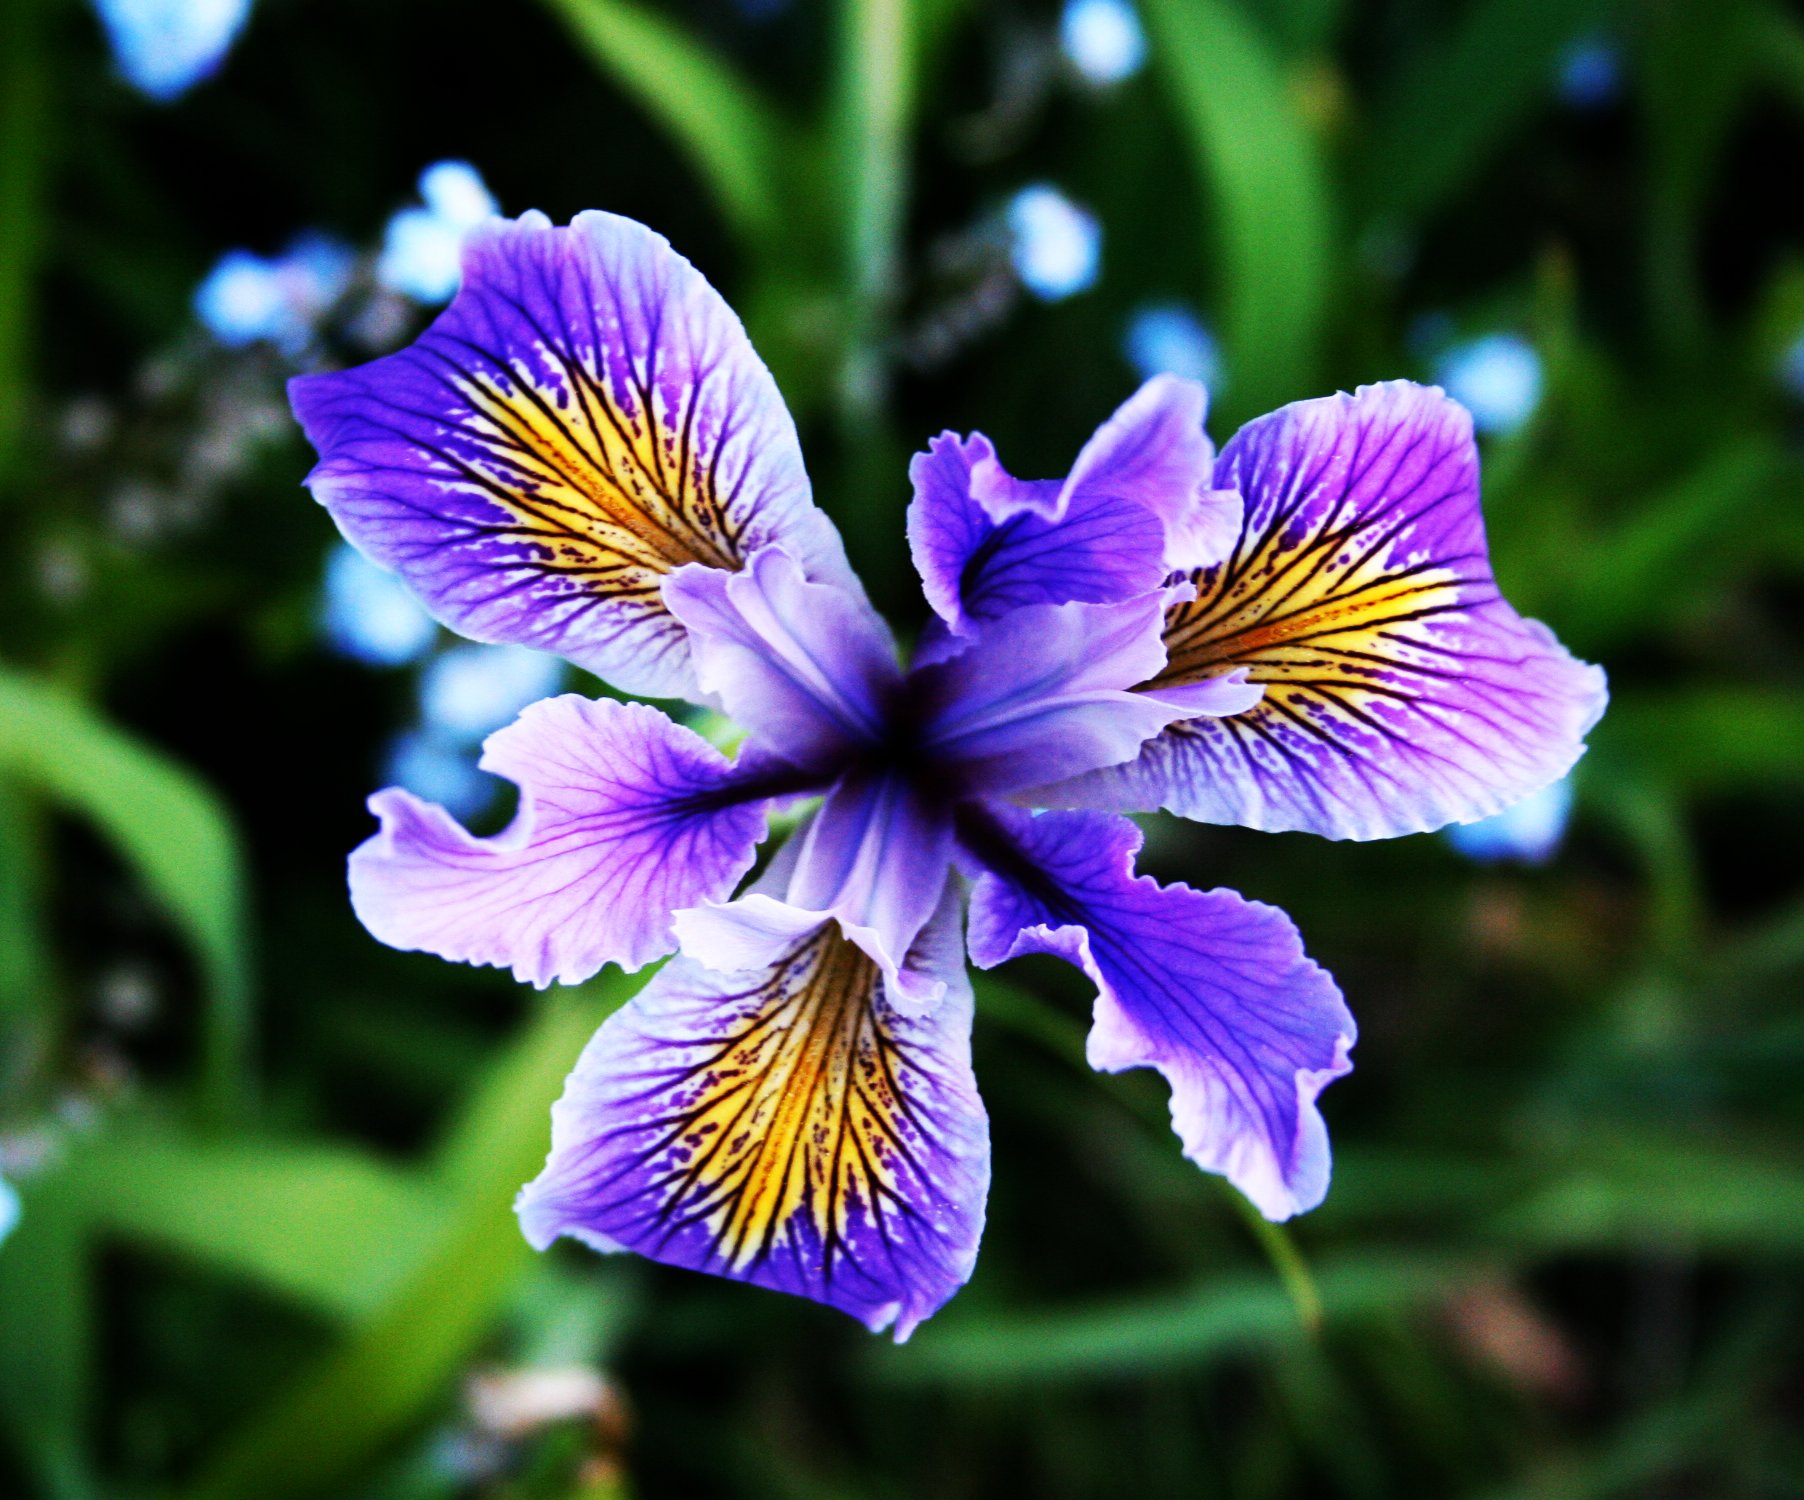 Blue Iris by keropy on DeviantArt